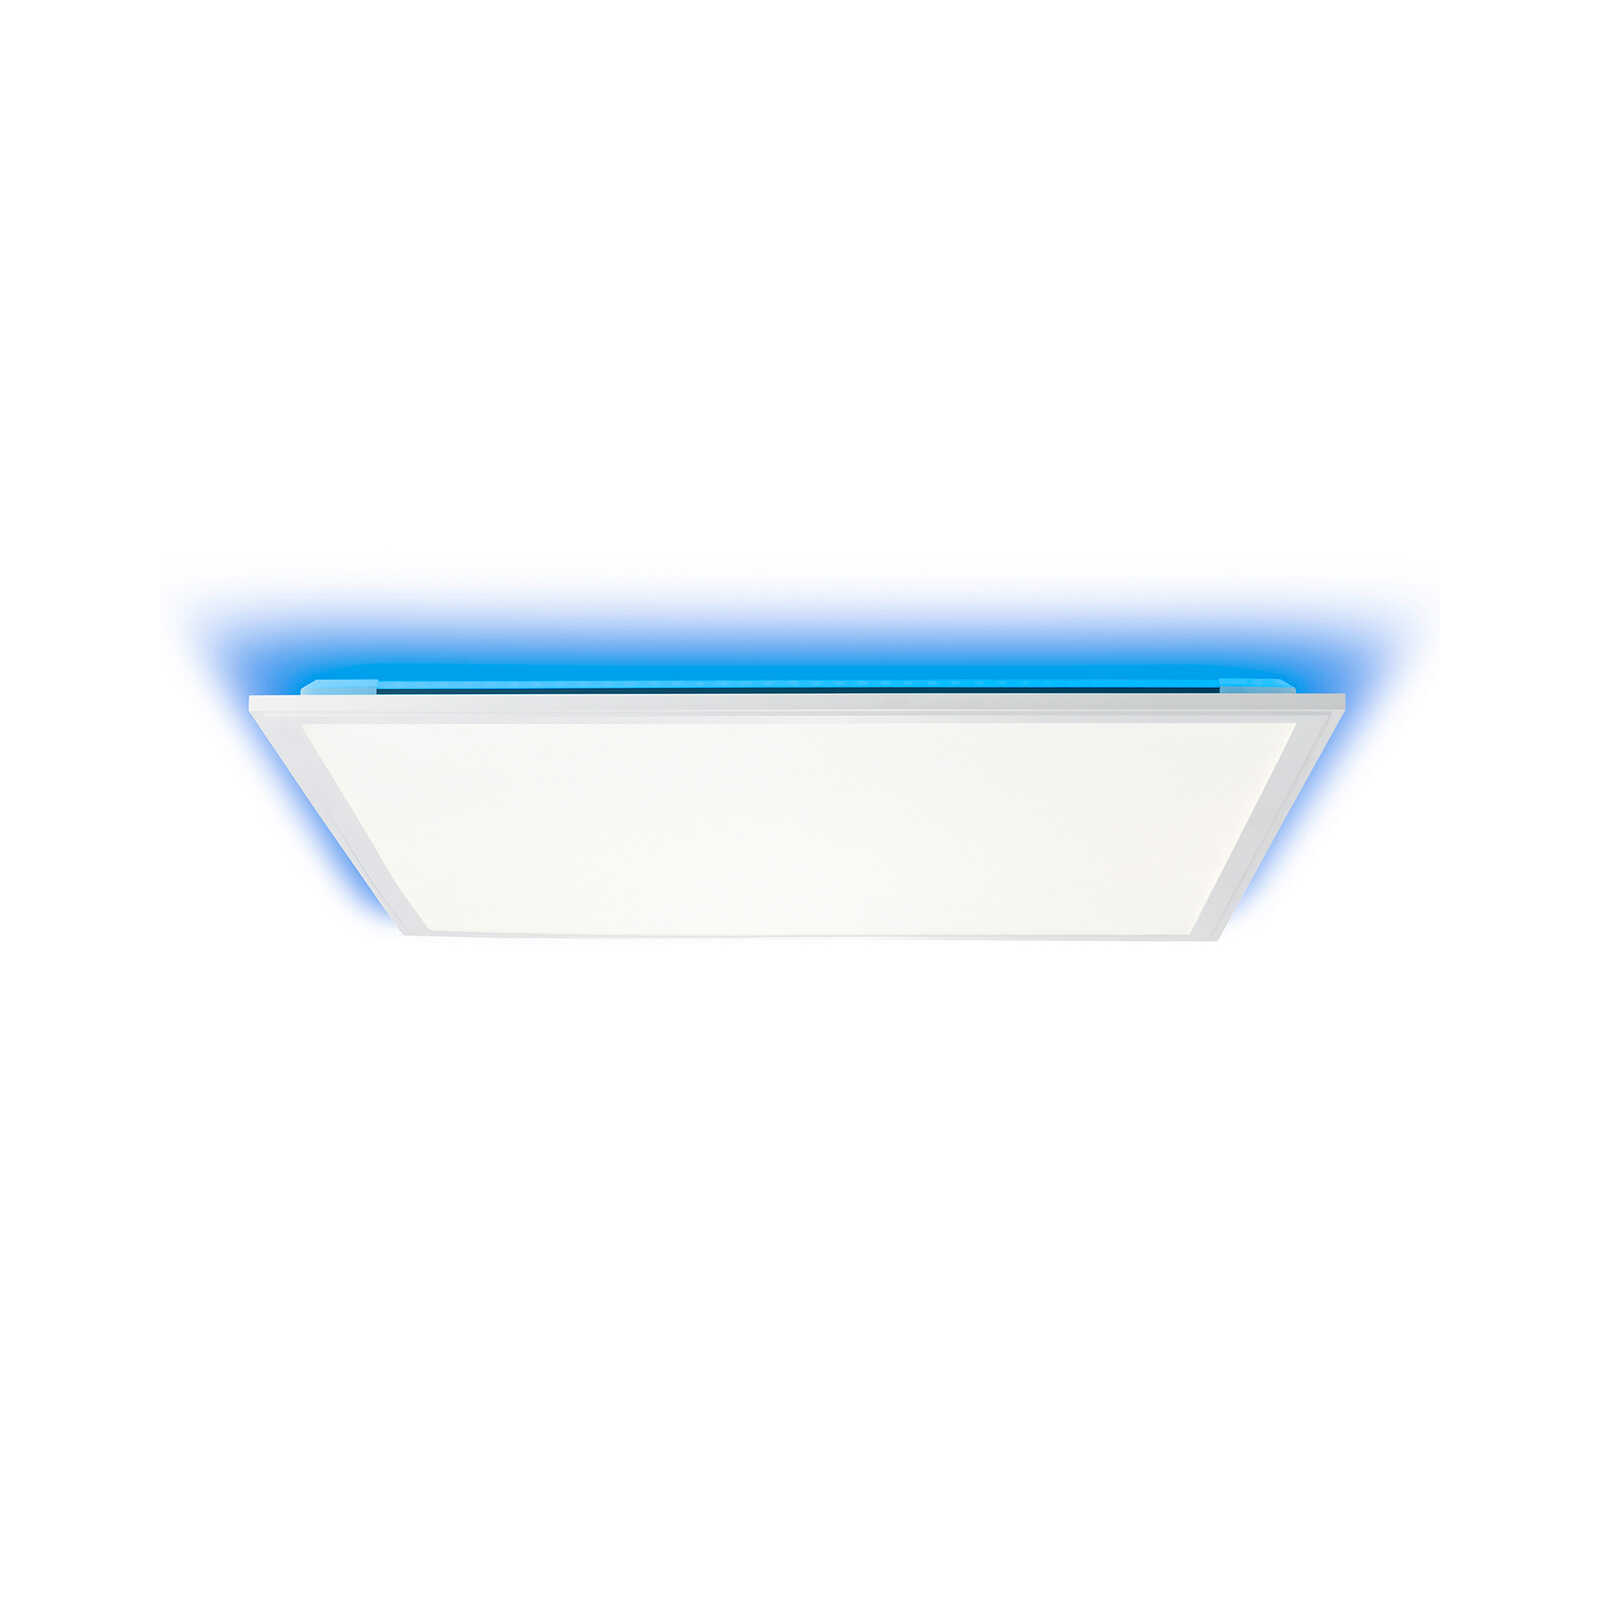 Plastic ceiling light - Albert 3 - White
